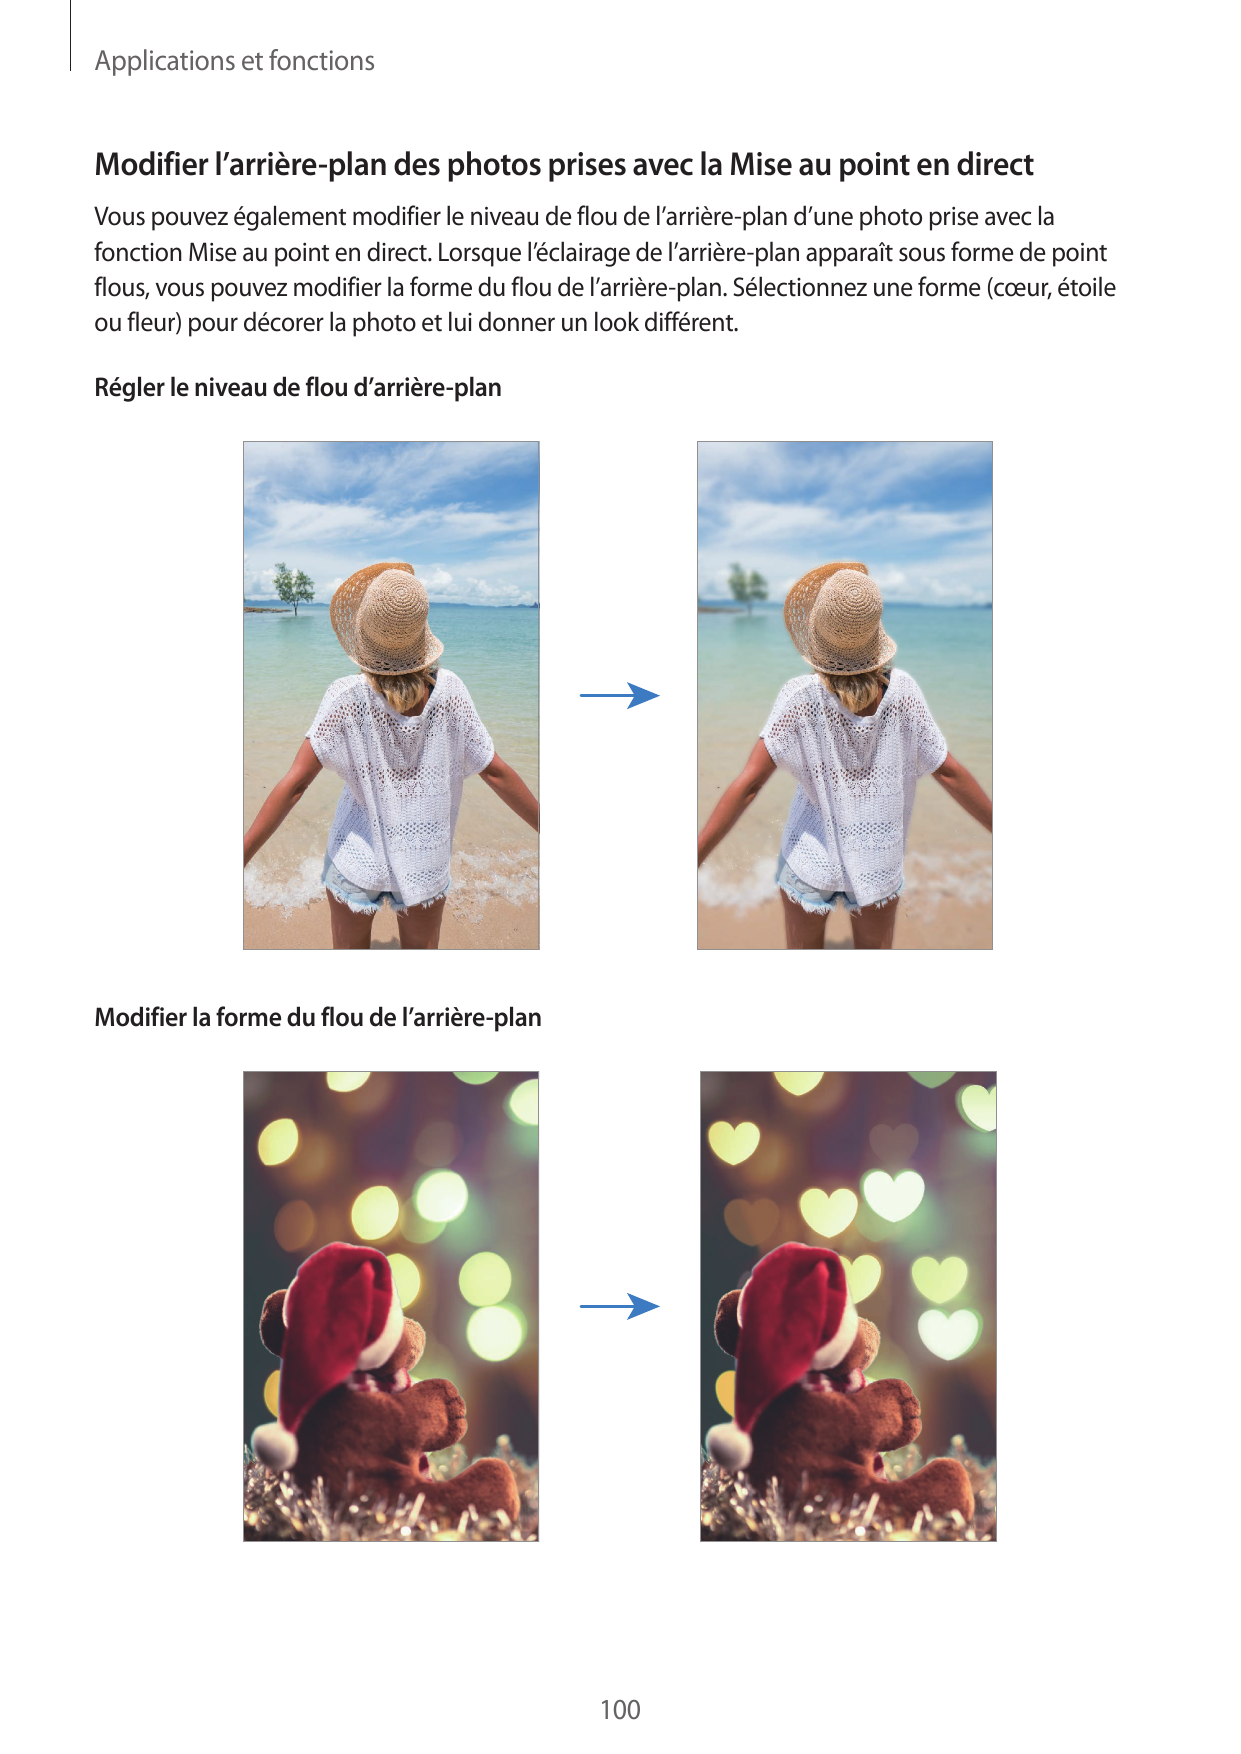 Applications et fonctionsModifier l’arrière-plan des photos prises avec la Mise au point en directVous pouvez également modifier